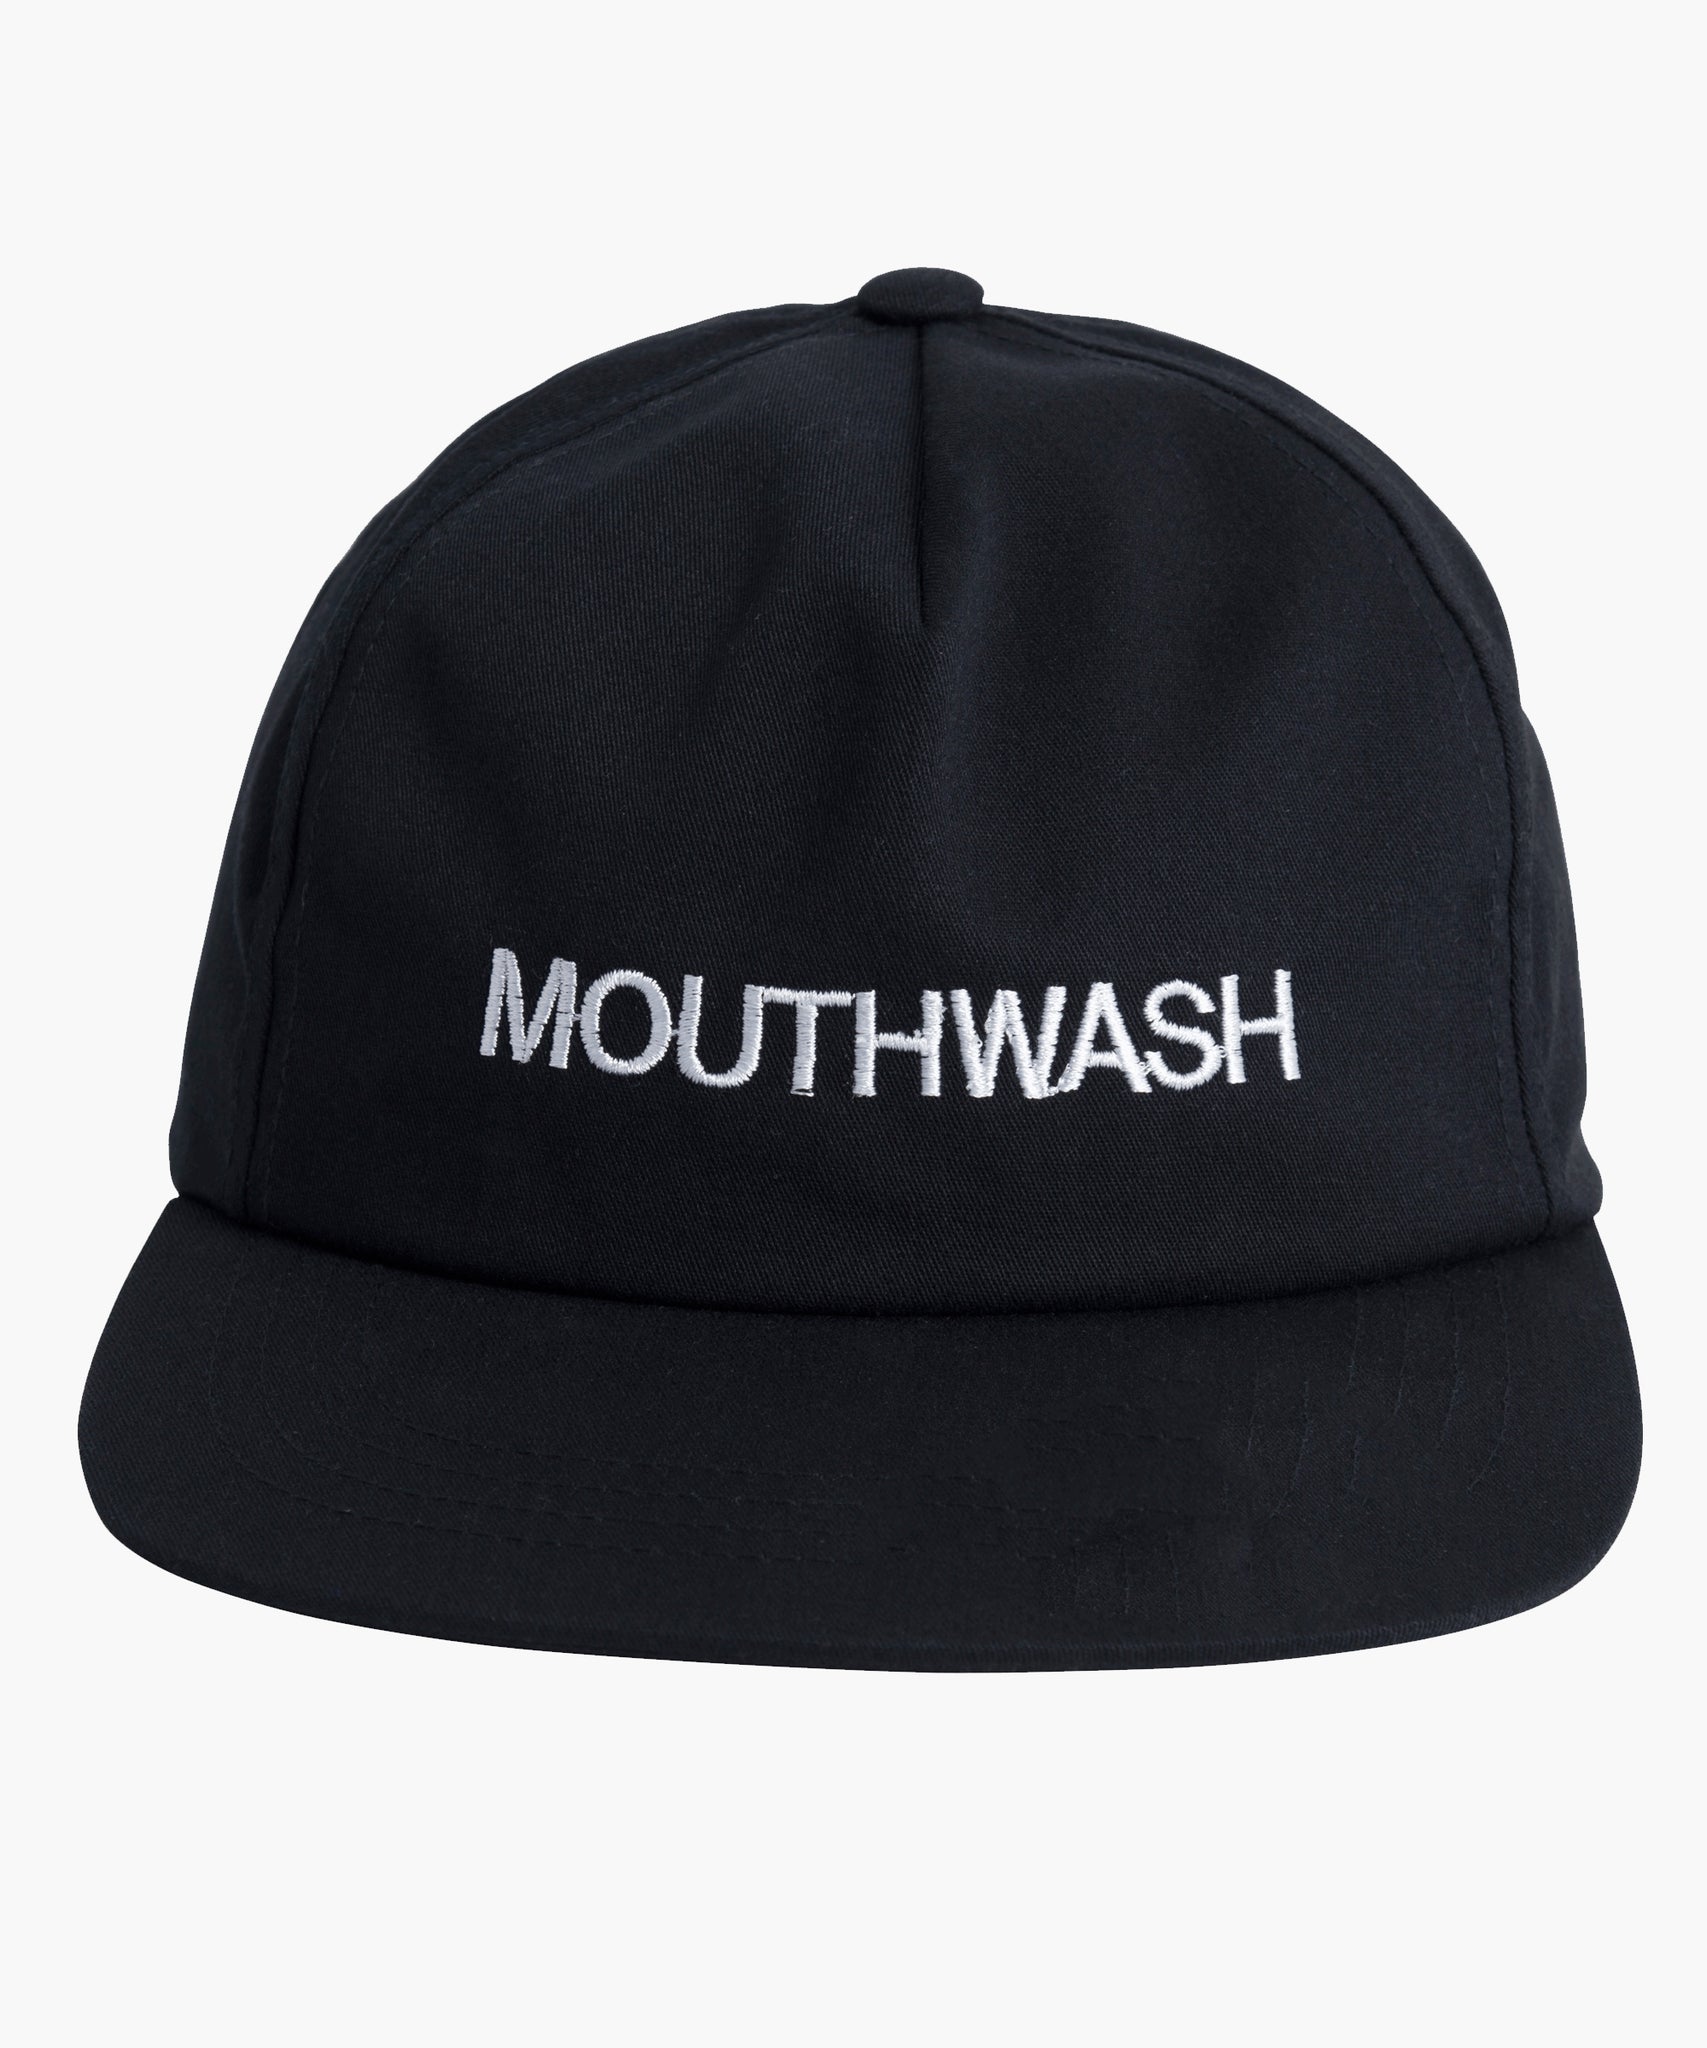 MOUTHWASH Trucker Hat - Black